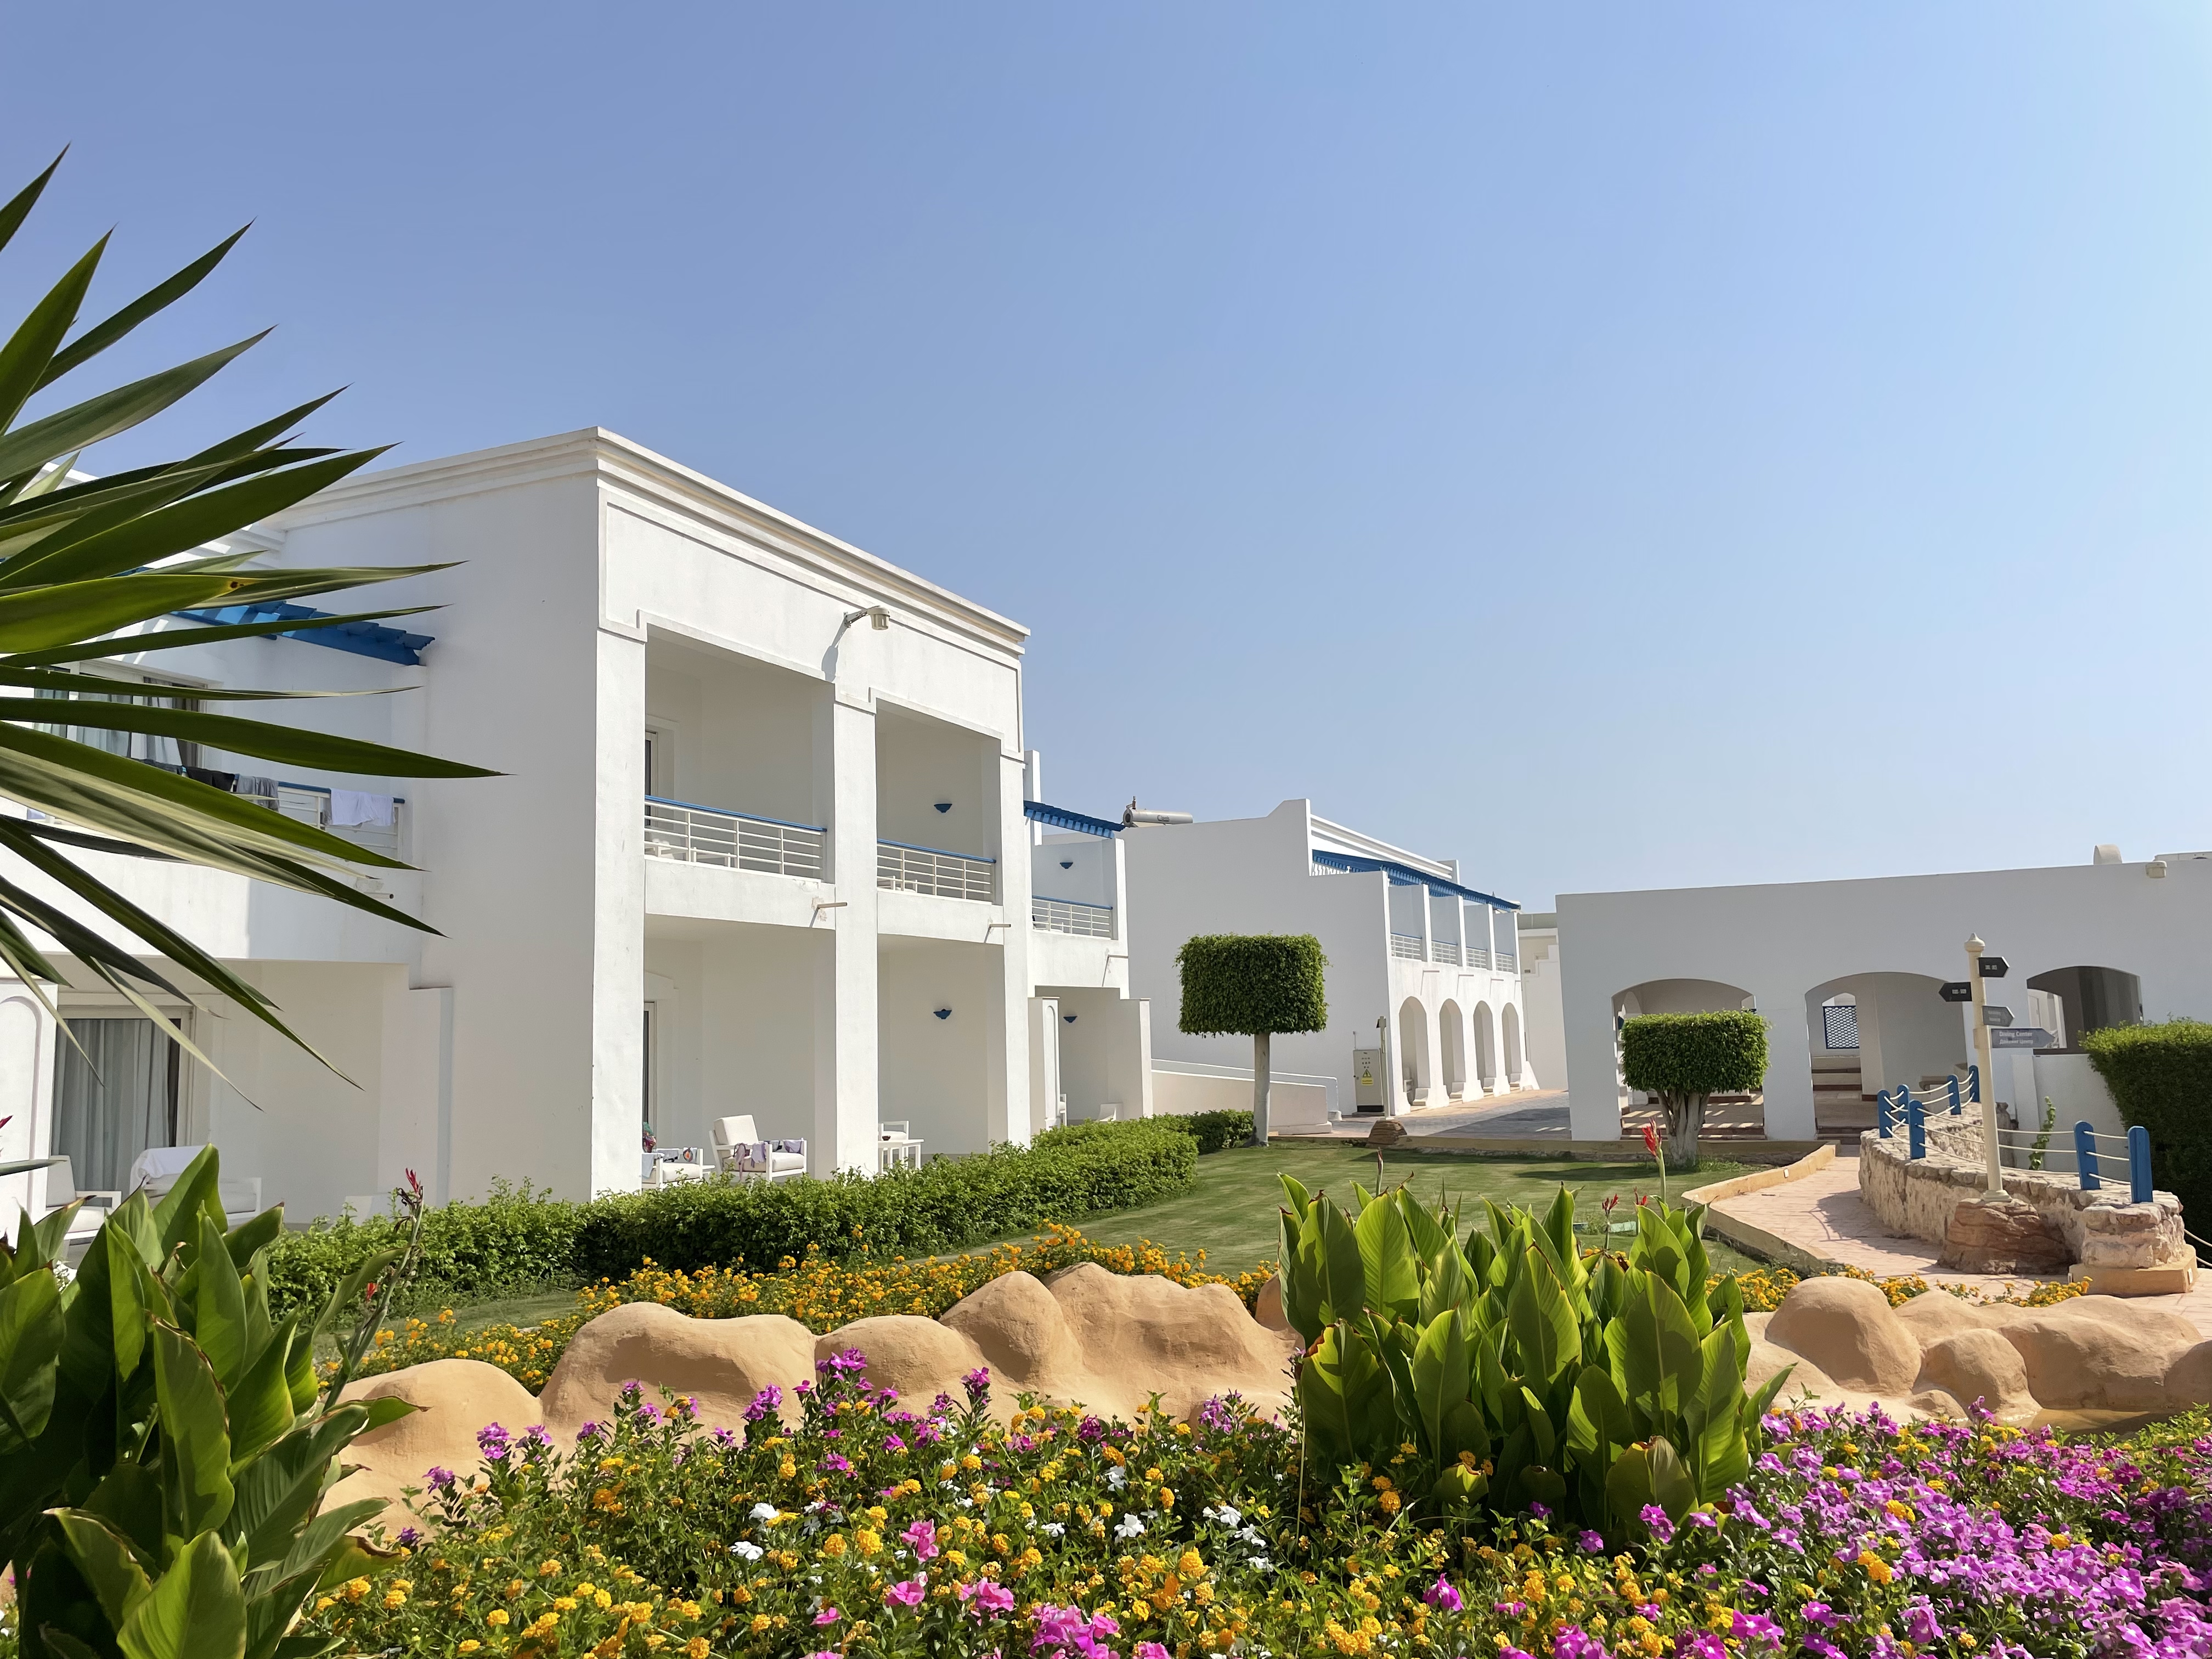 度假胜地-Renaissance Sharm El Sheikh Golden View Beach Resort